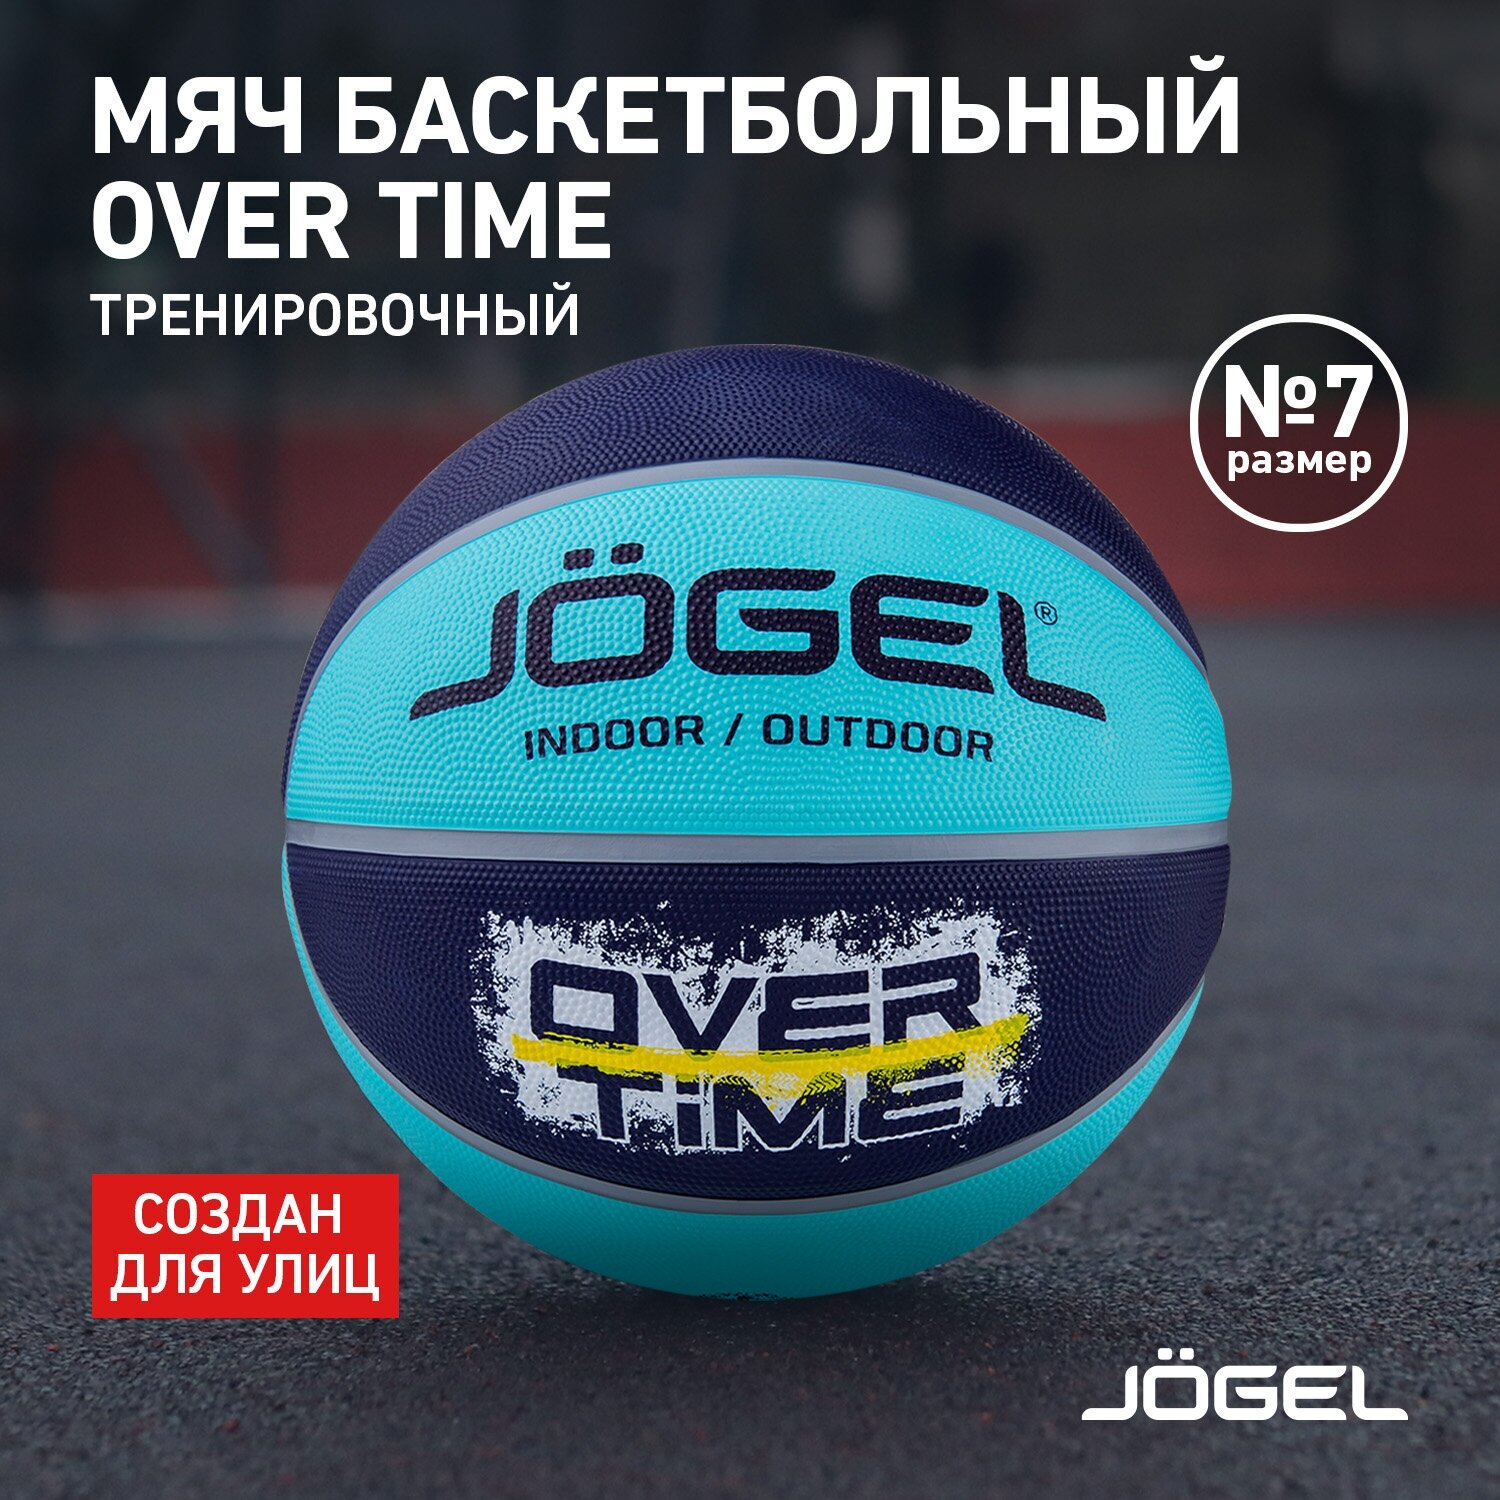 Баскетбольный мяч Jogel OVERTIME для уличного баскетбола, размер 7